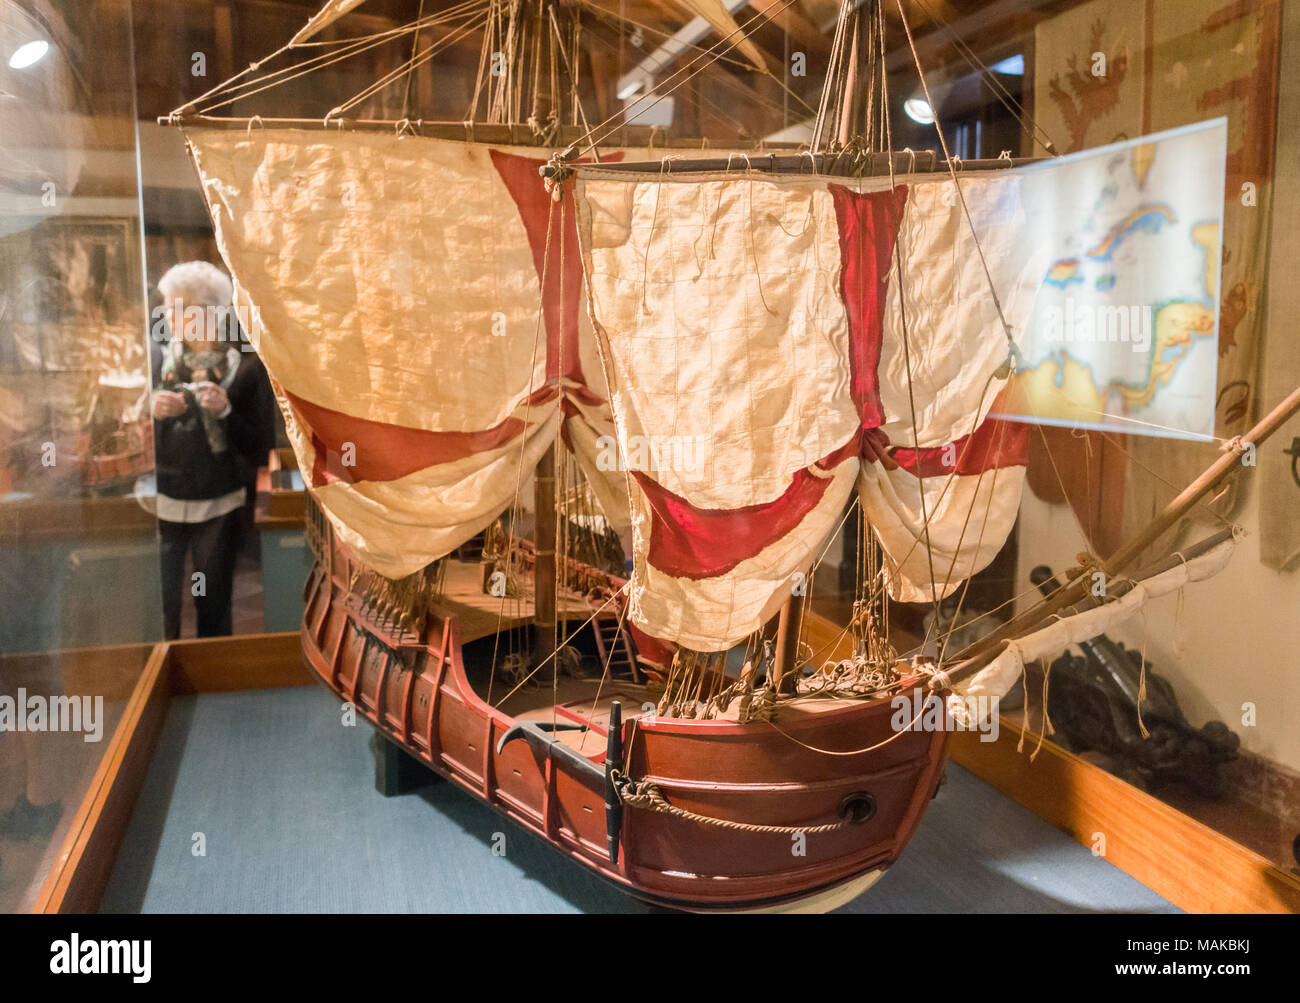 Modell des Columbus Santa Maria caravel Schiff in Casa de Colón (Columbus' Haus) Museum, Las Palmas, Gran Canaria, Kanarische Inseln, Spanien. Stockfoto